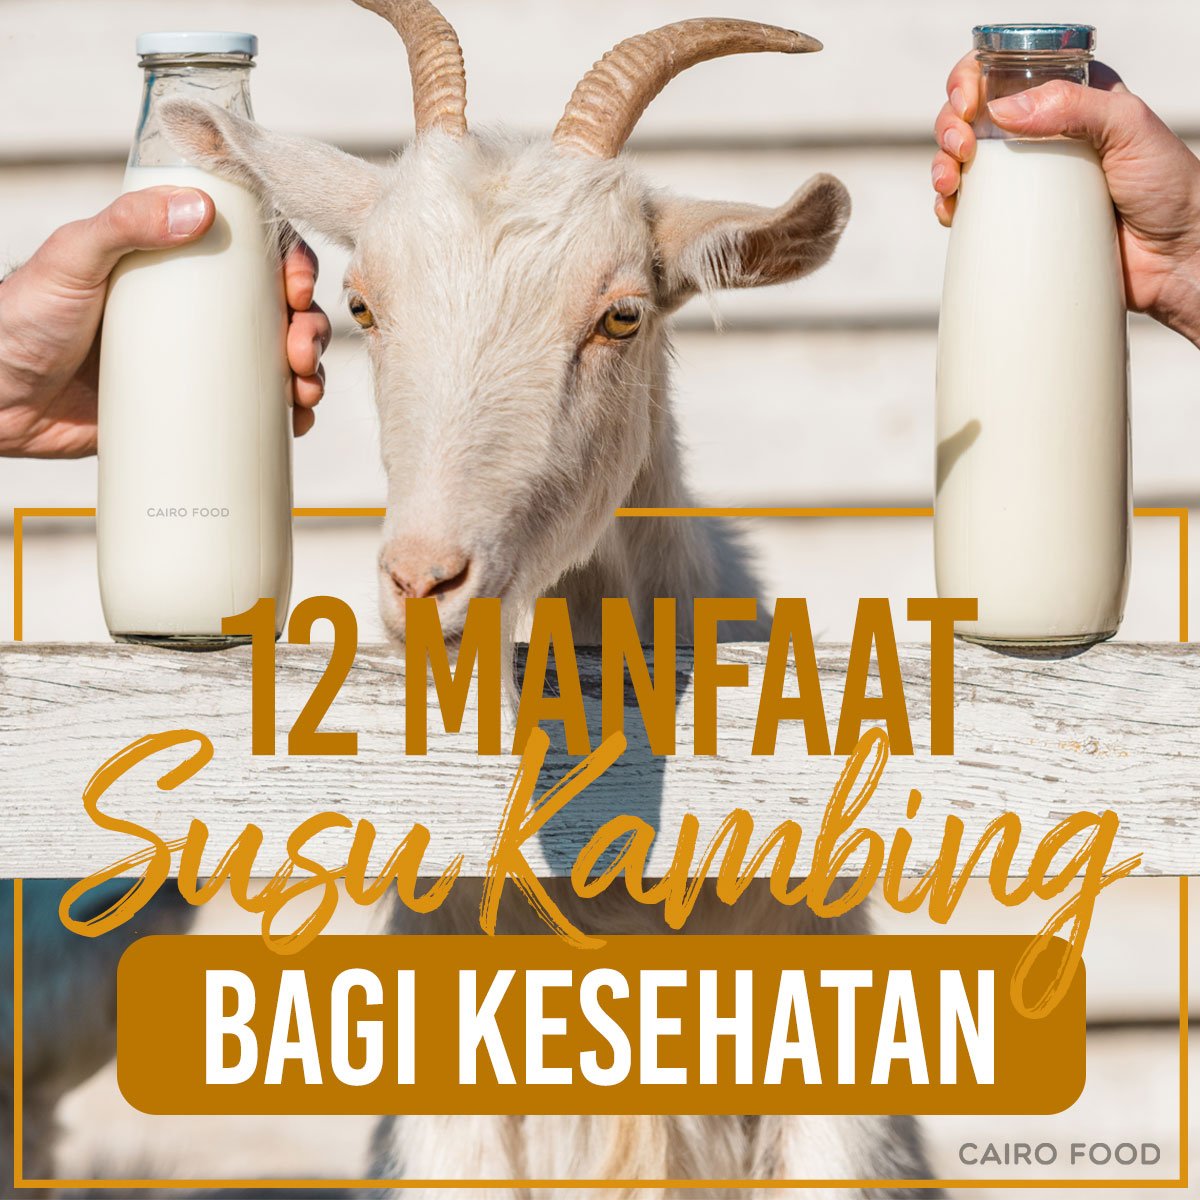 12 manfaat susu kambing bagi kesehatan